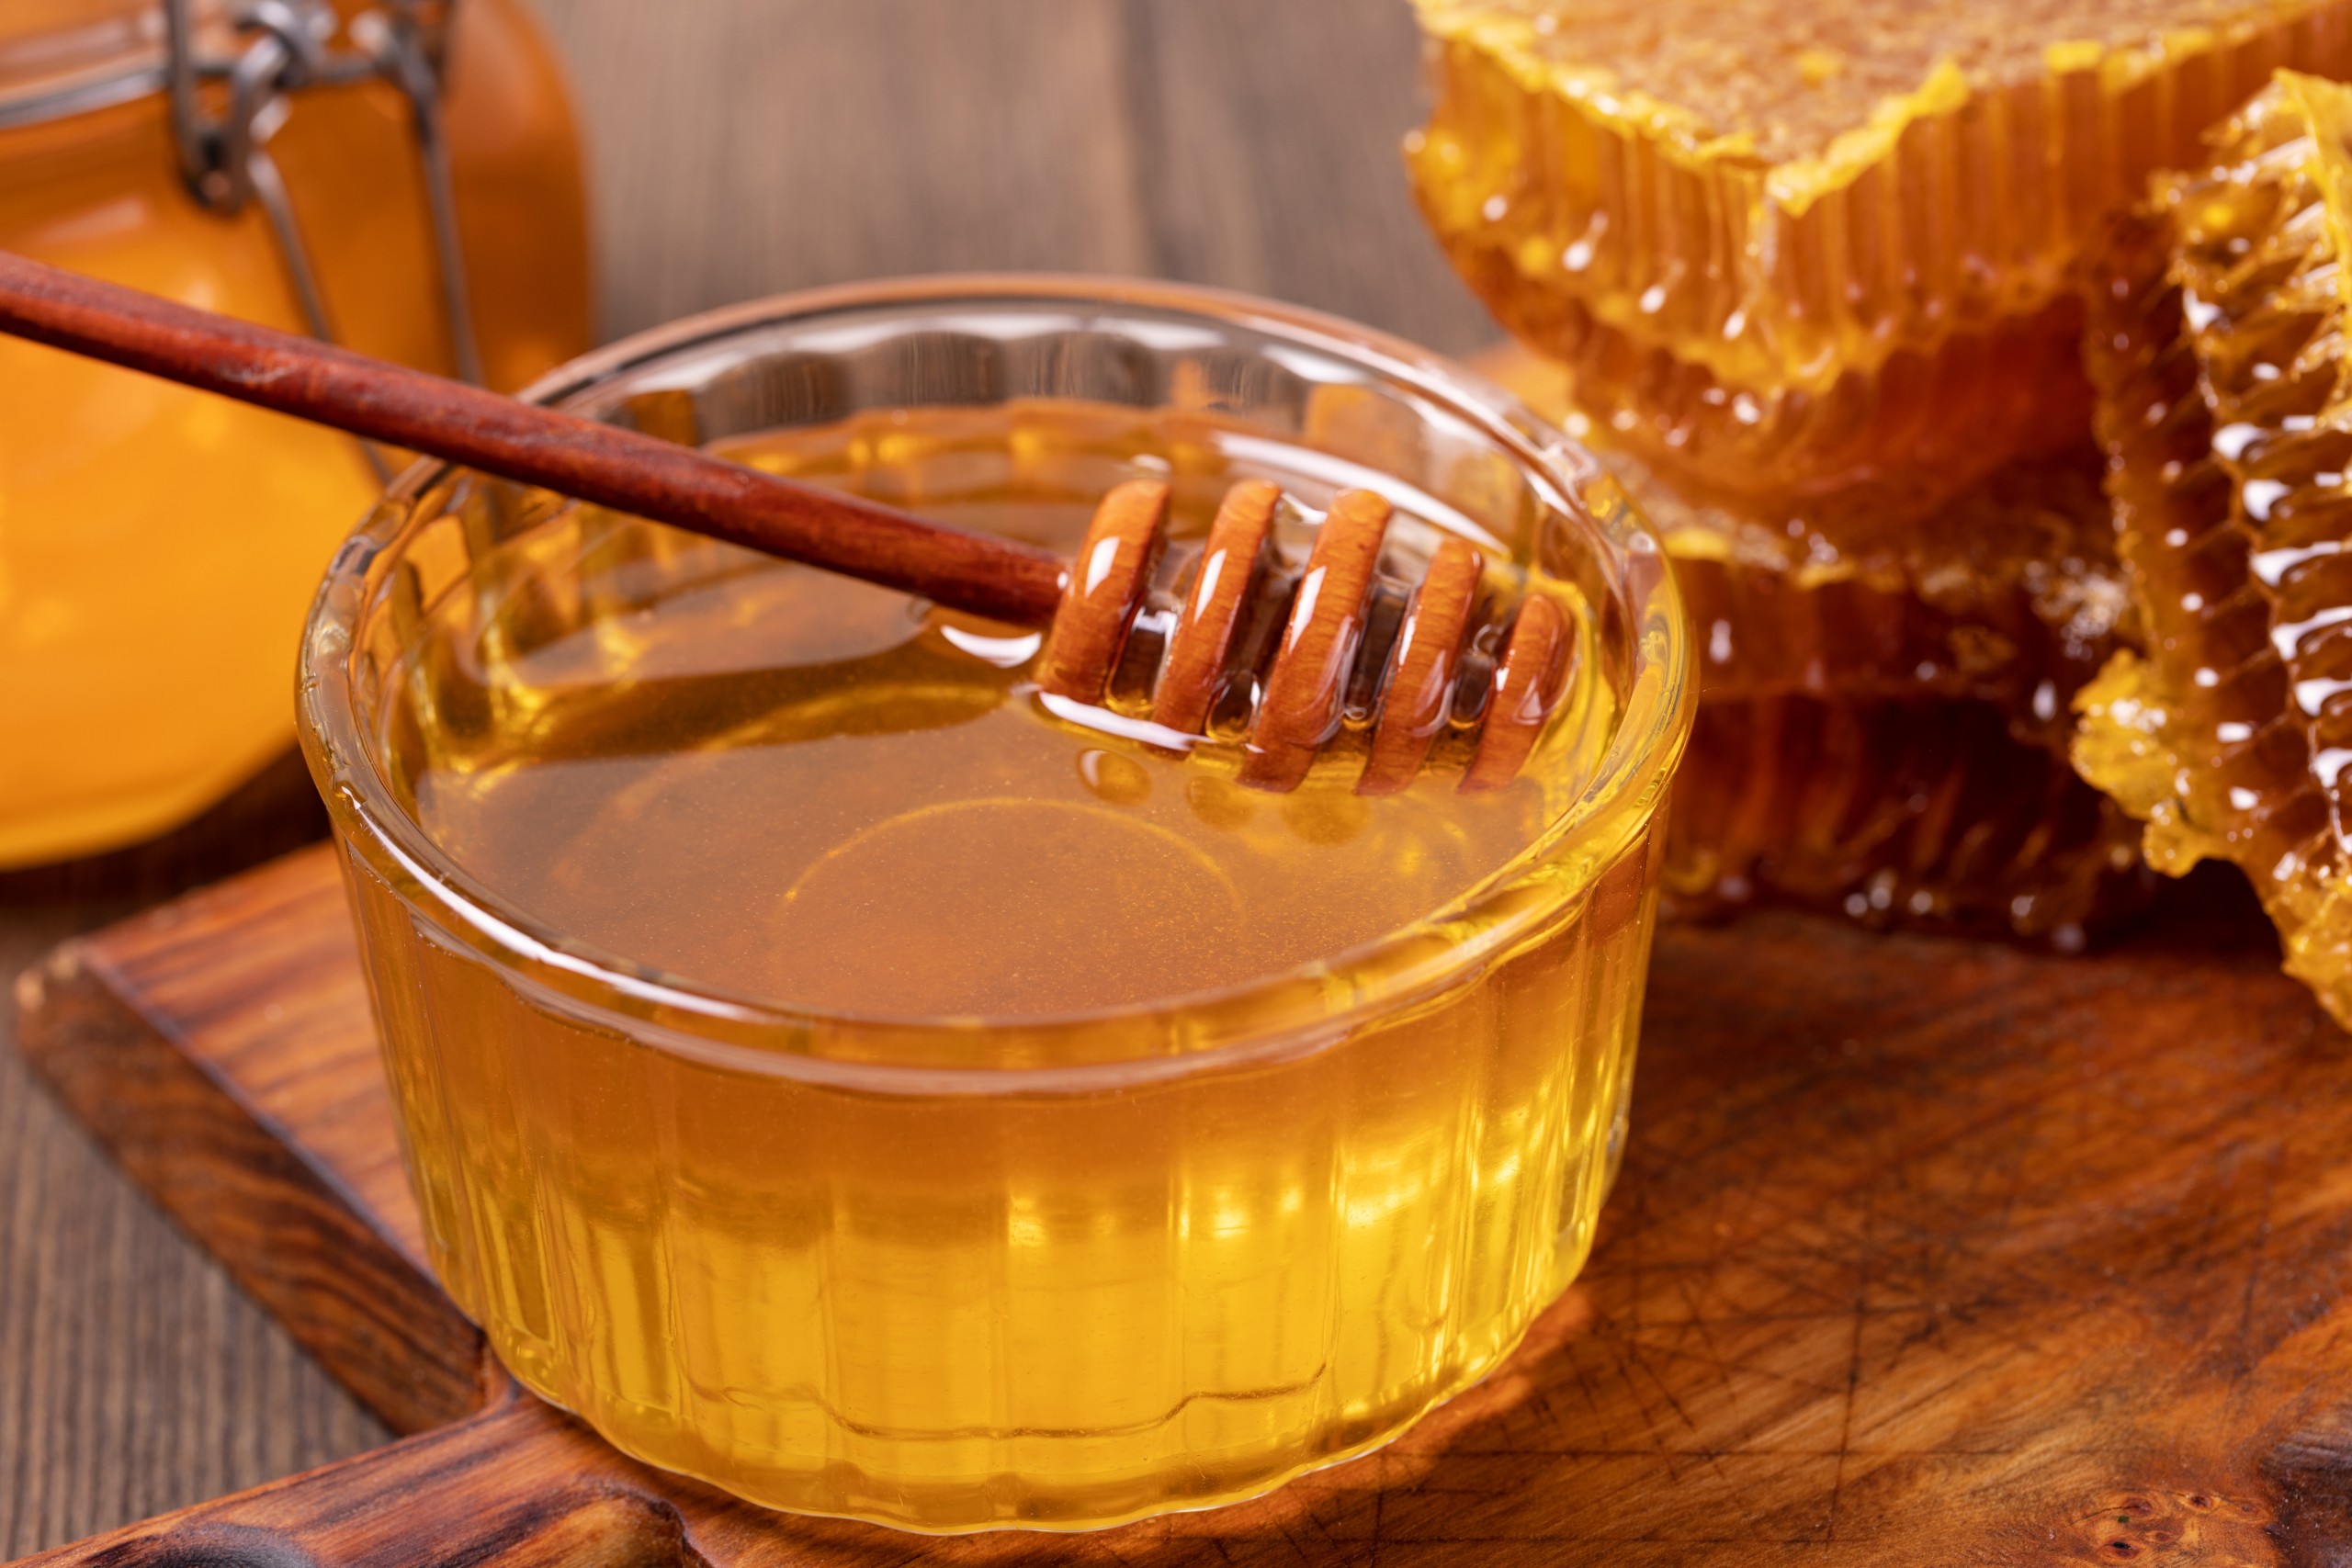 Вкушая вкусих мало меда. Мед. Мёд в сотах. Соты меда. Мёд цветочный.